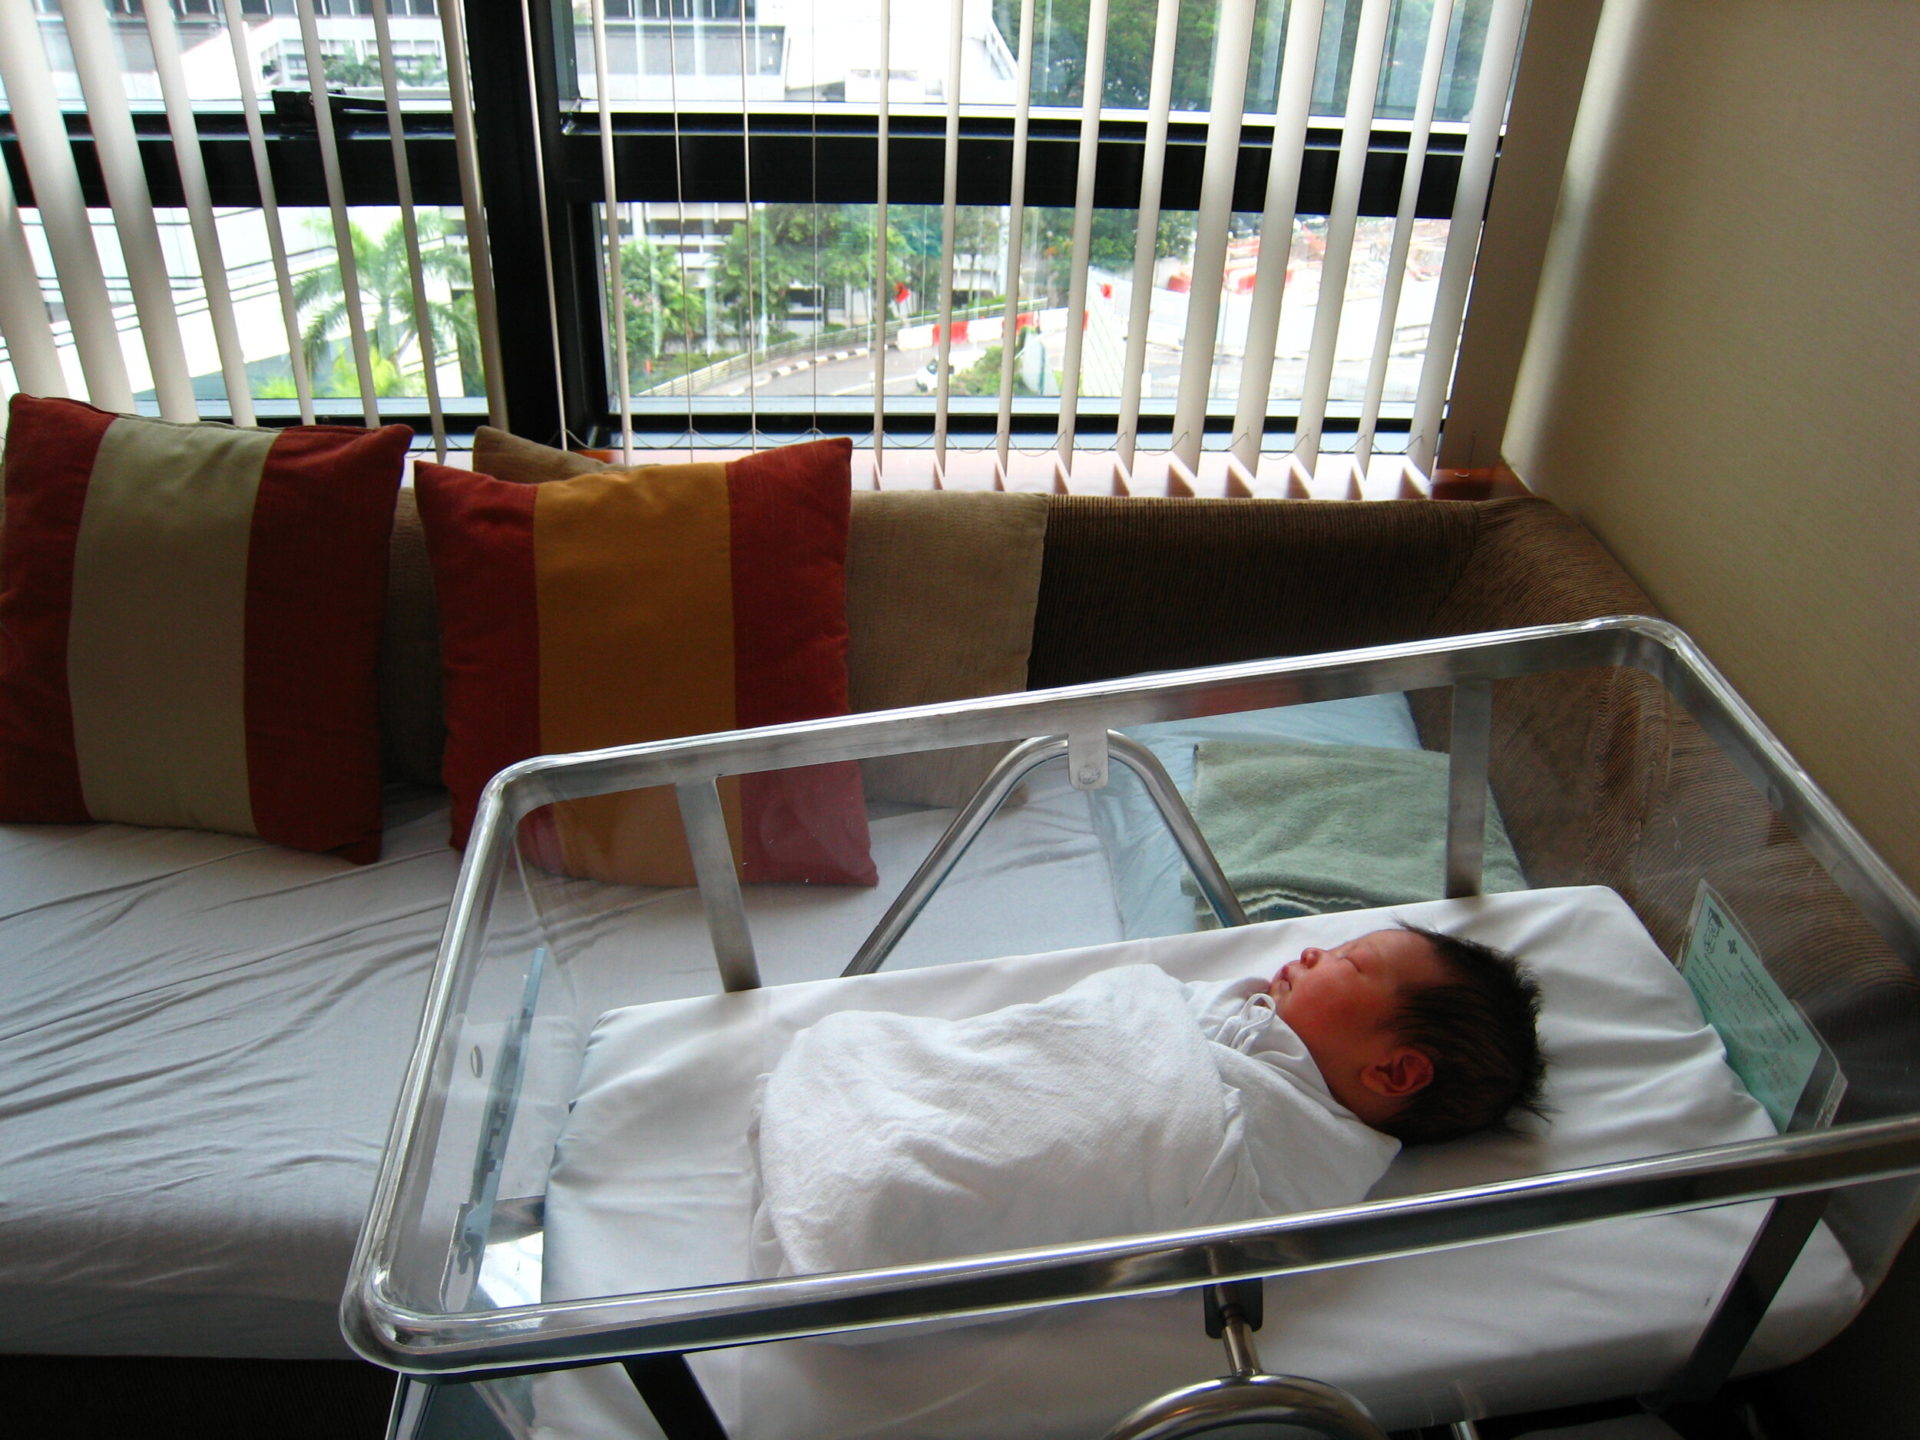 May 15, 2008 – NUH Maternity Ward (Photo by David Lee | Flickr)